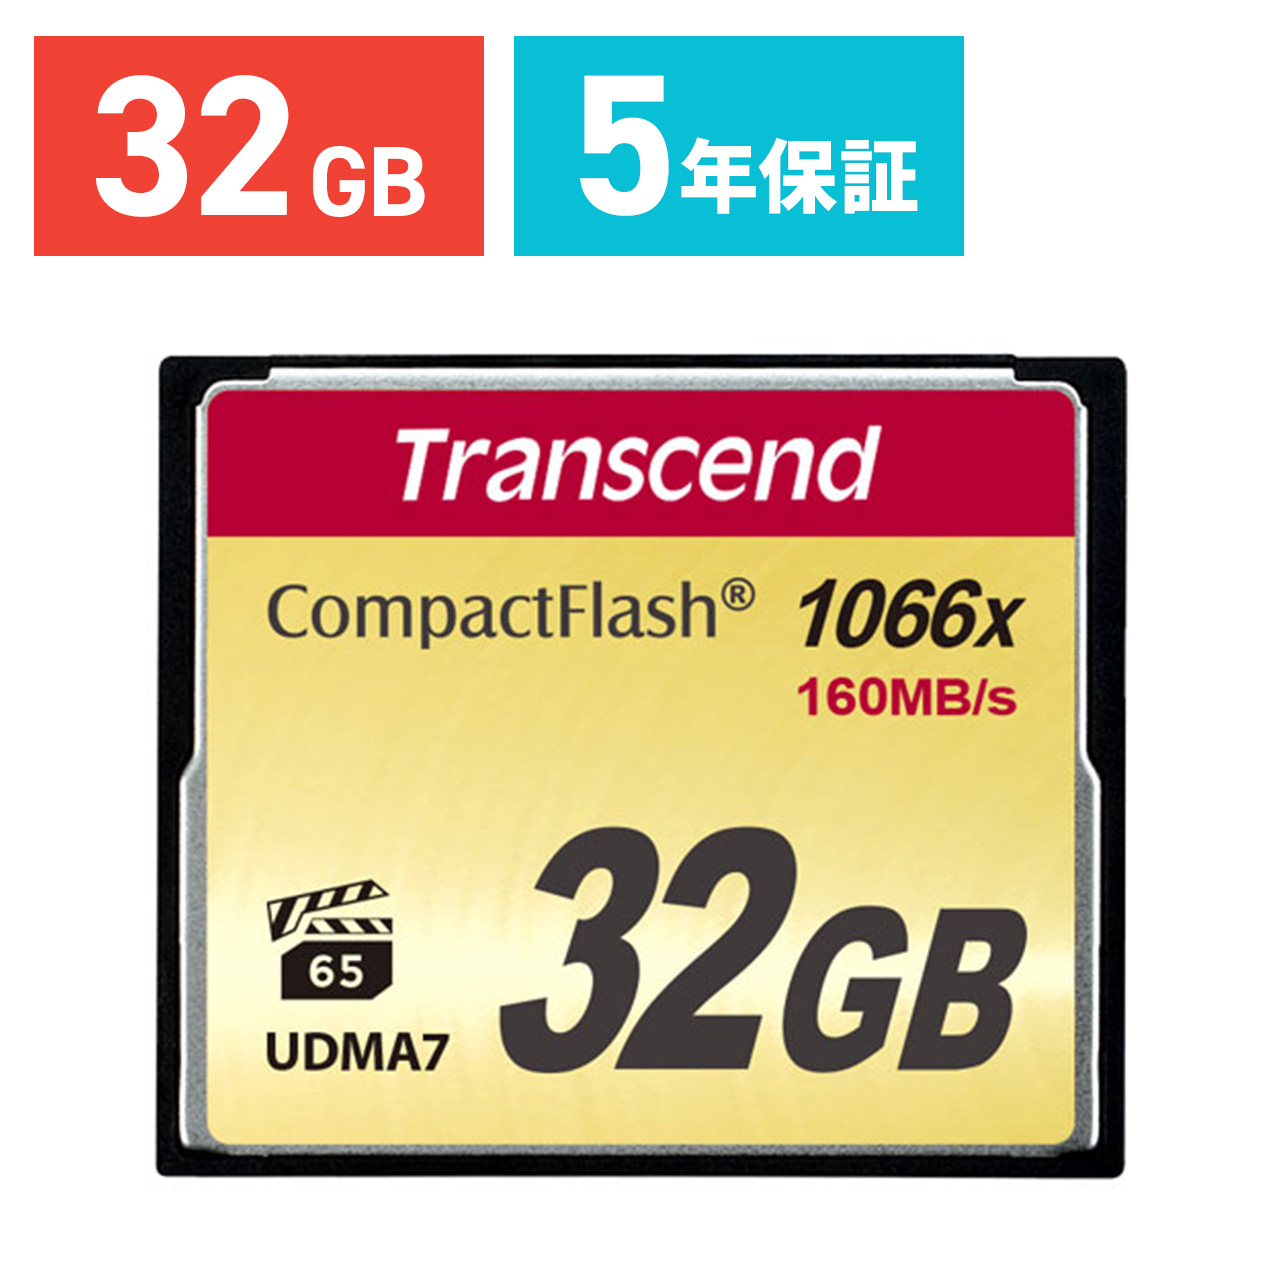 新作送料無料 Transcend コンパクトフラッシュ 32GB 1066倍速 5年保証